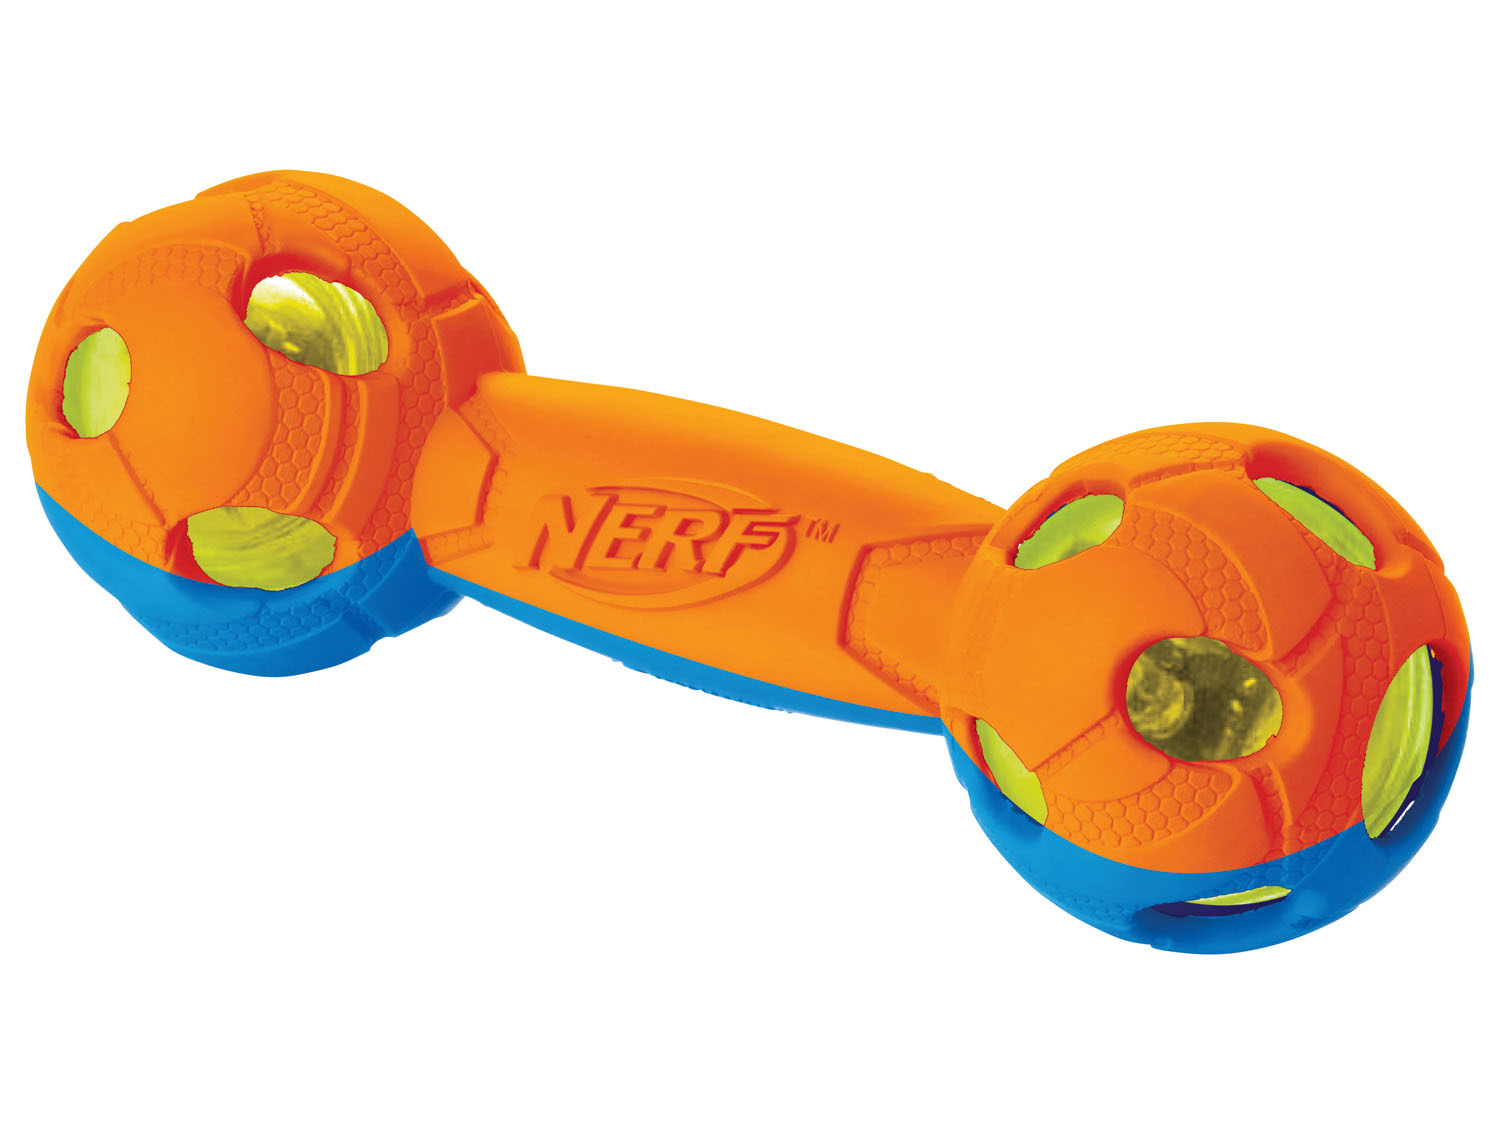 Игрушка для собак гантель. НЕРФ дог игрушки для собак. Игрушка для собак Nerf Dog. Игрушка для собак Nerf Dog бластер большой сине-оранжевый.